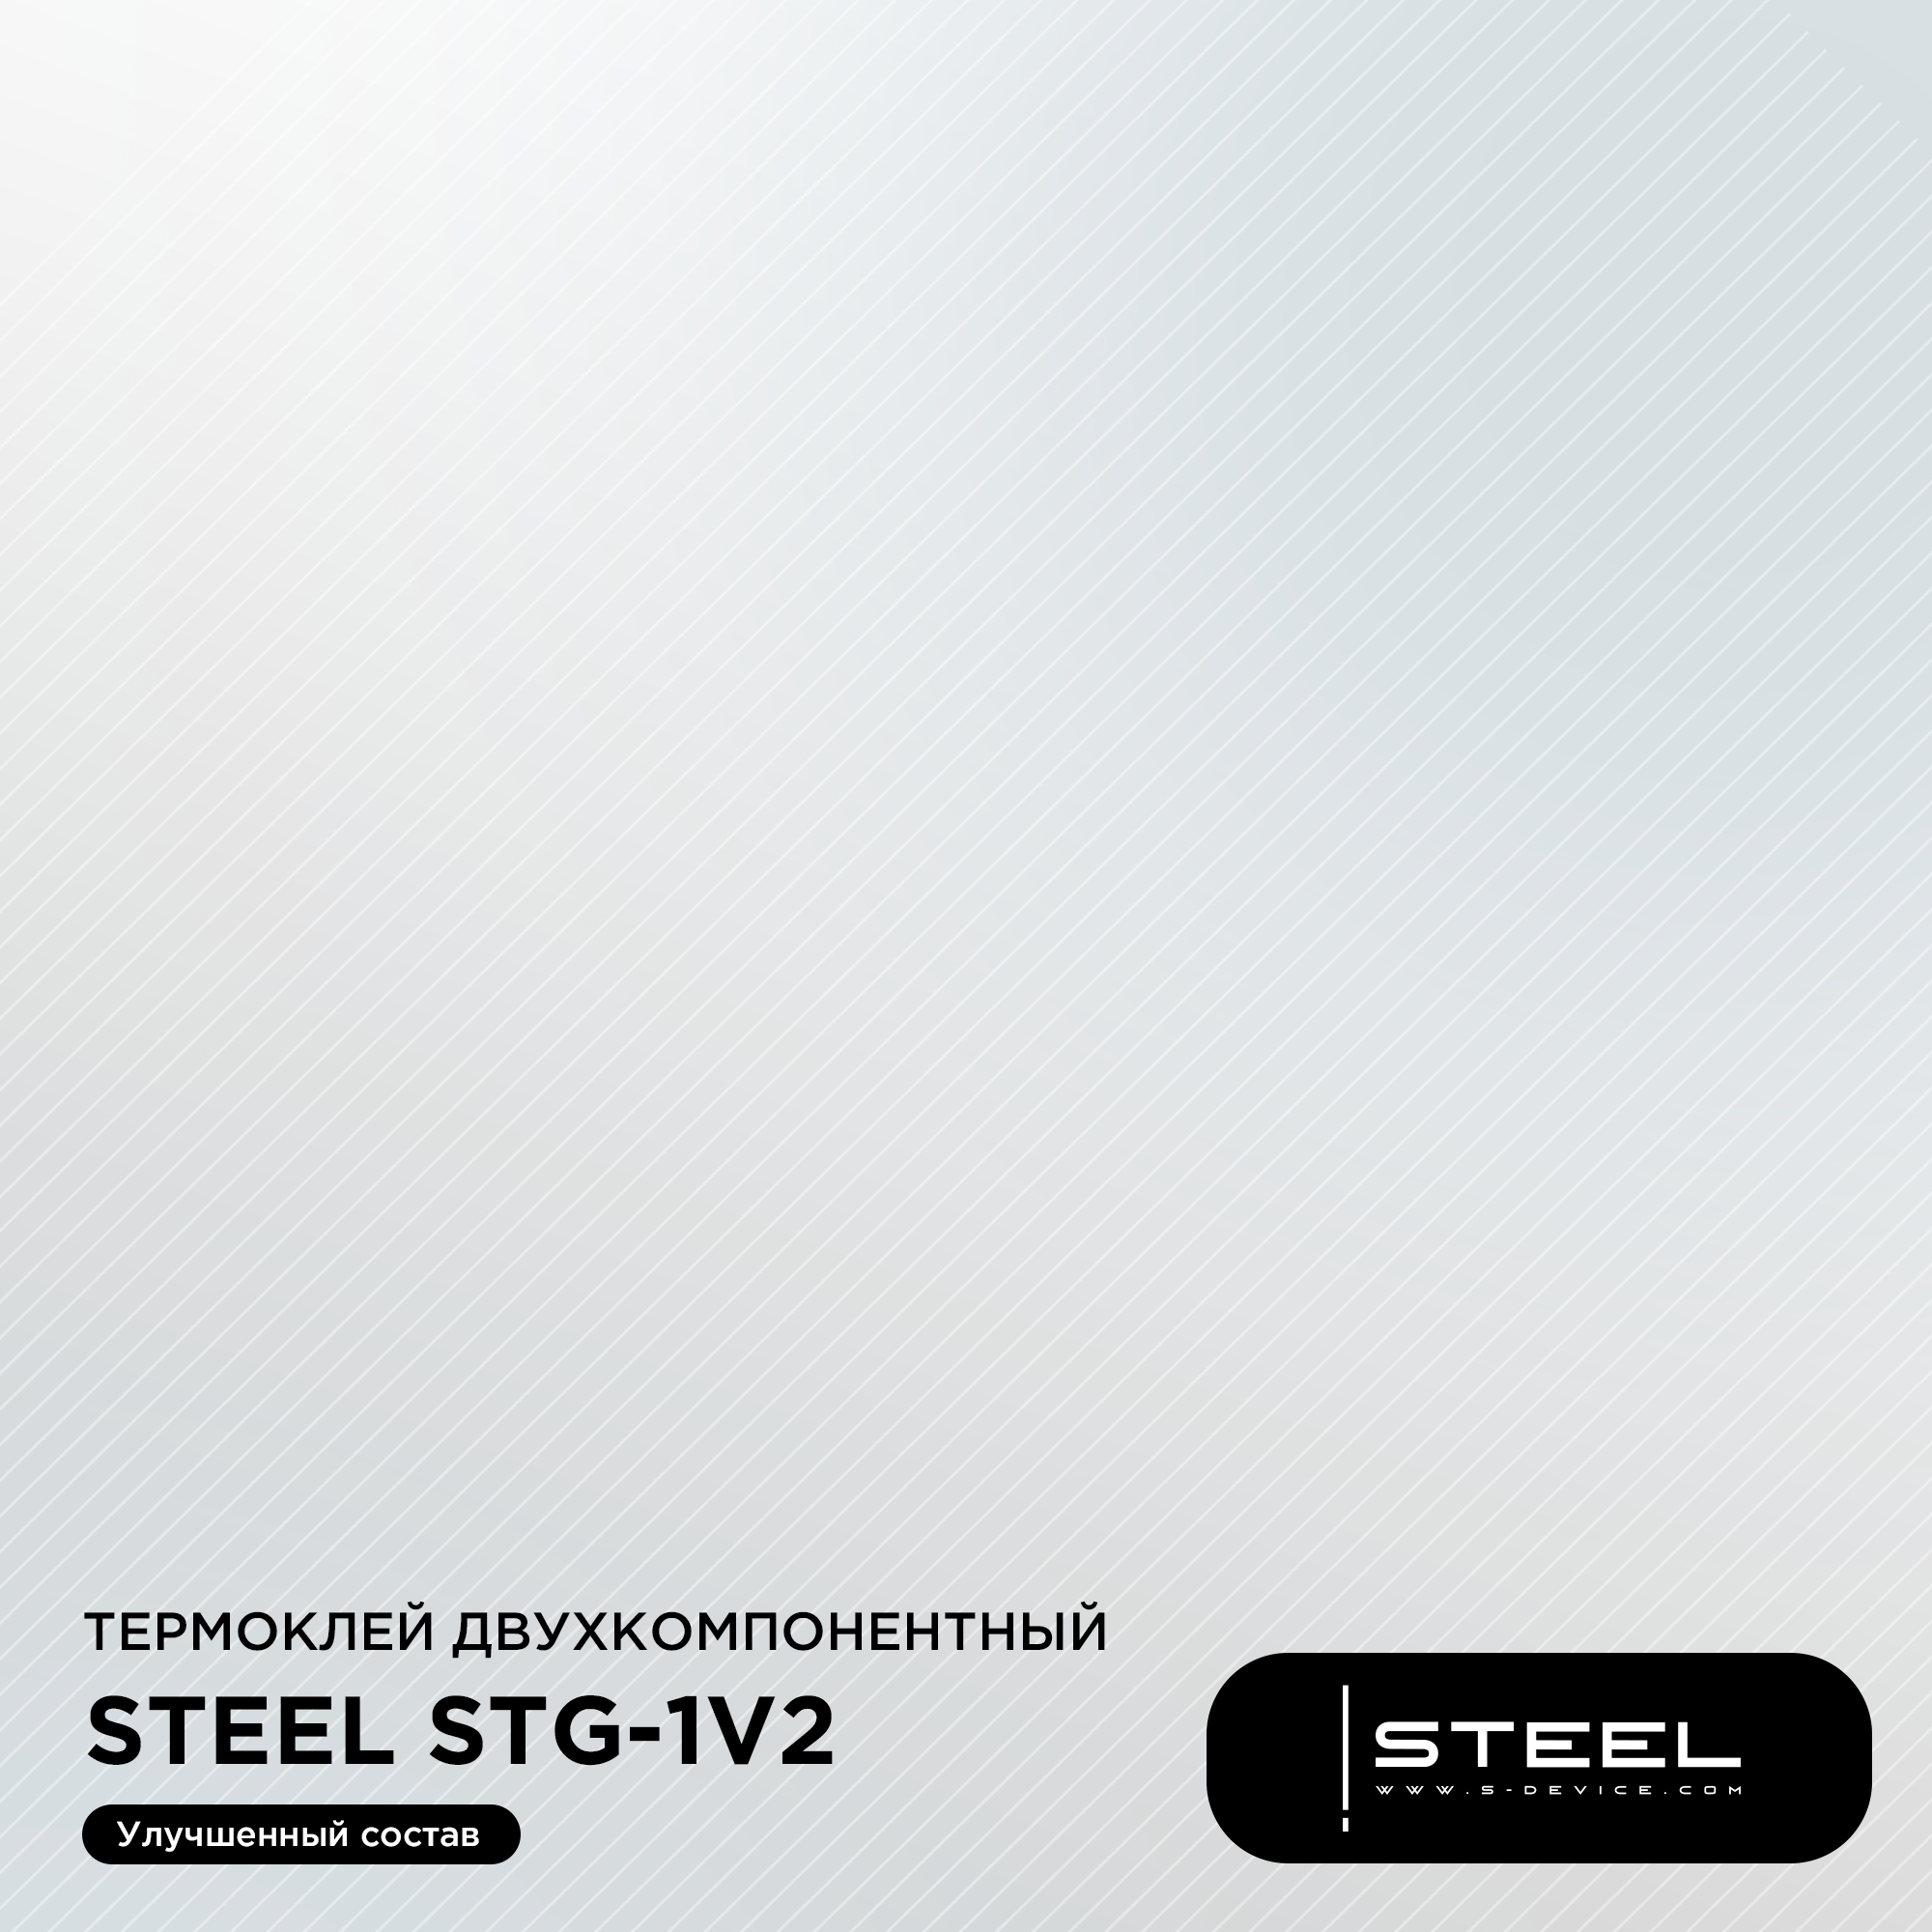 Теплопроводный двухкомпонентный клей ! STEEL STG-1